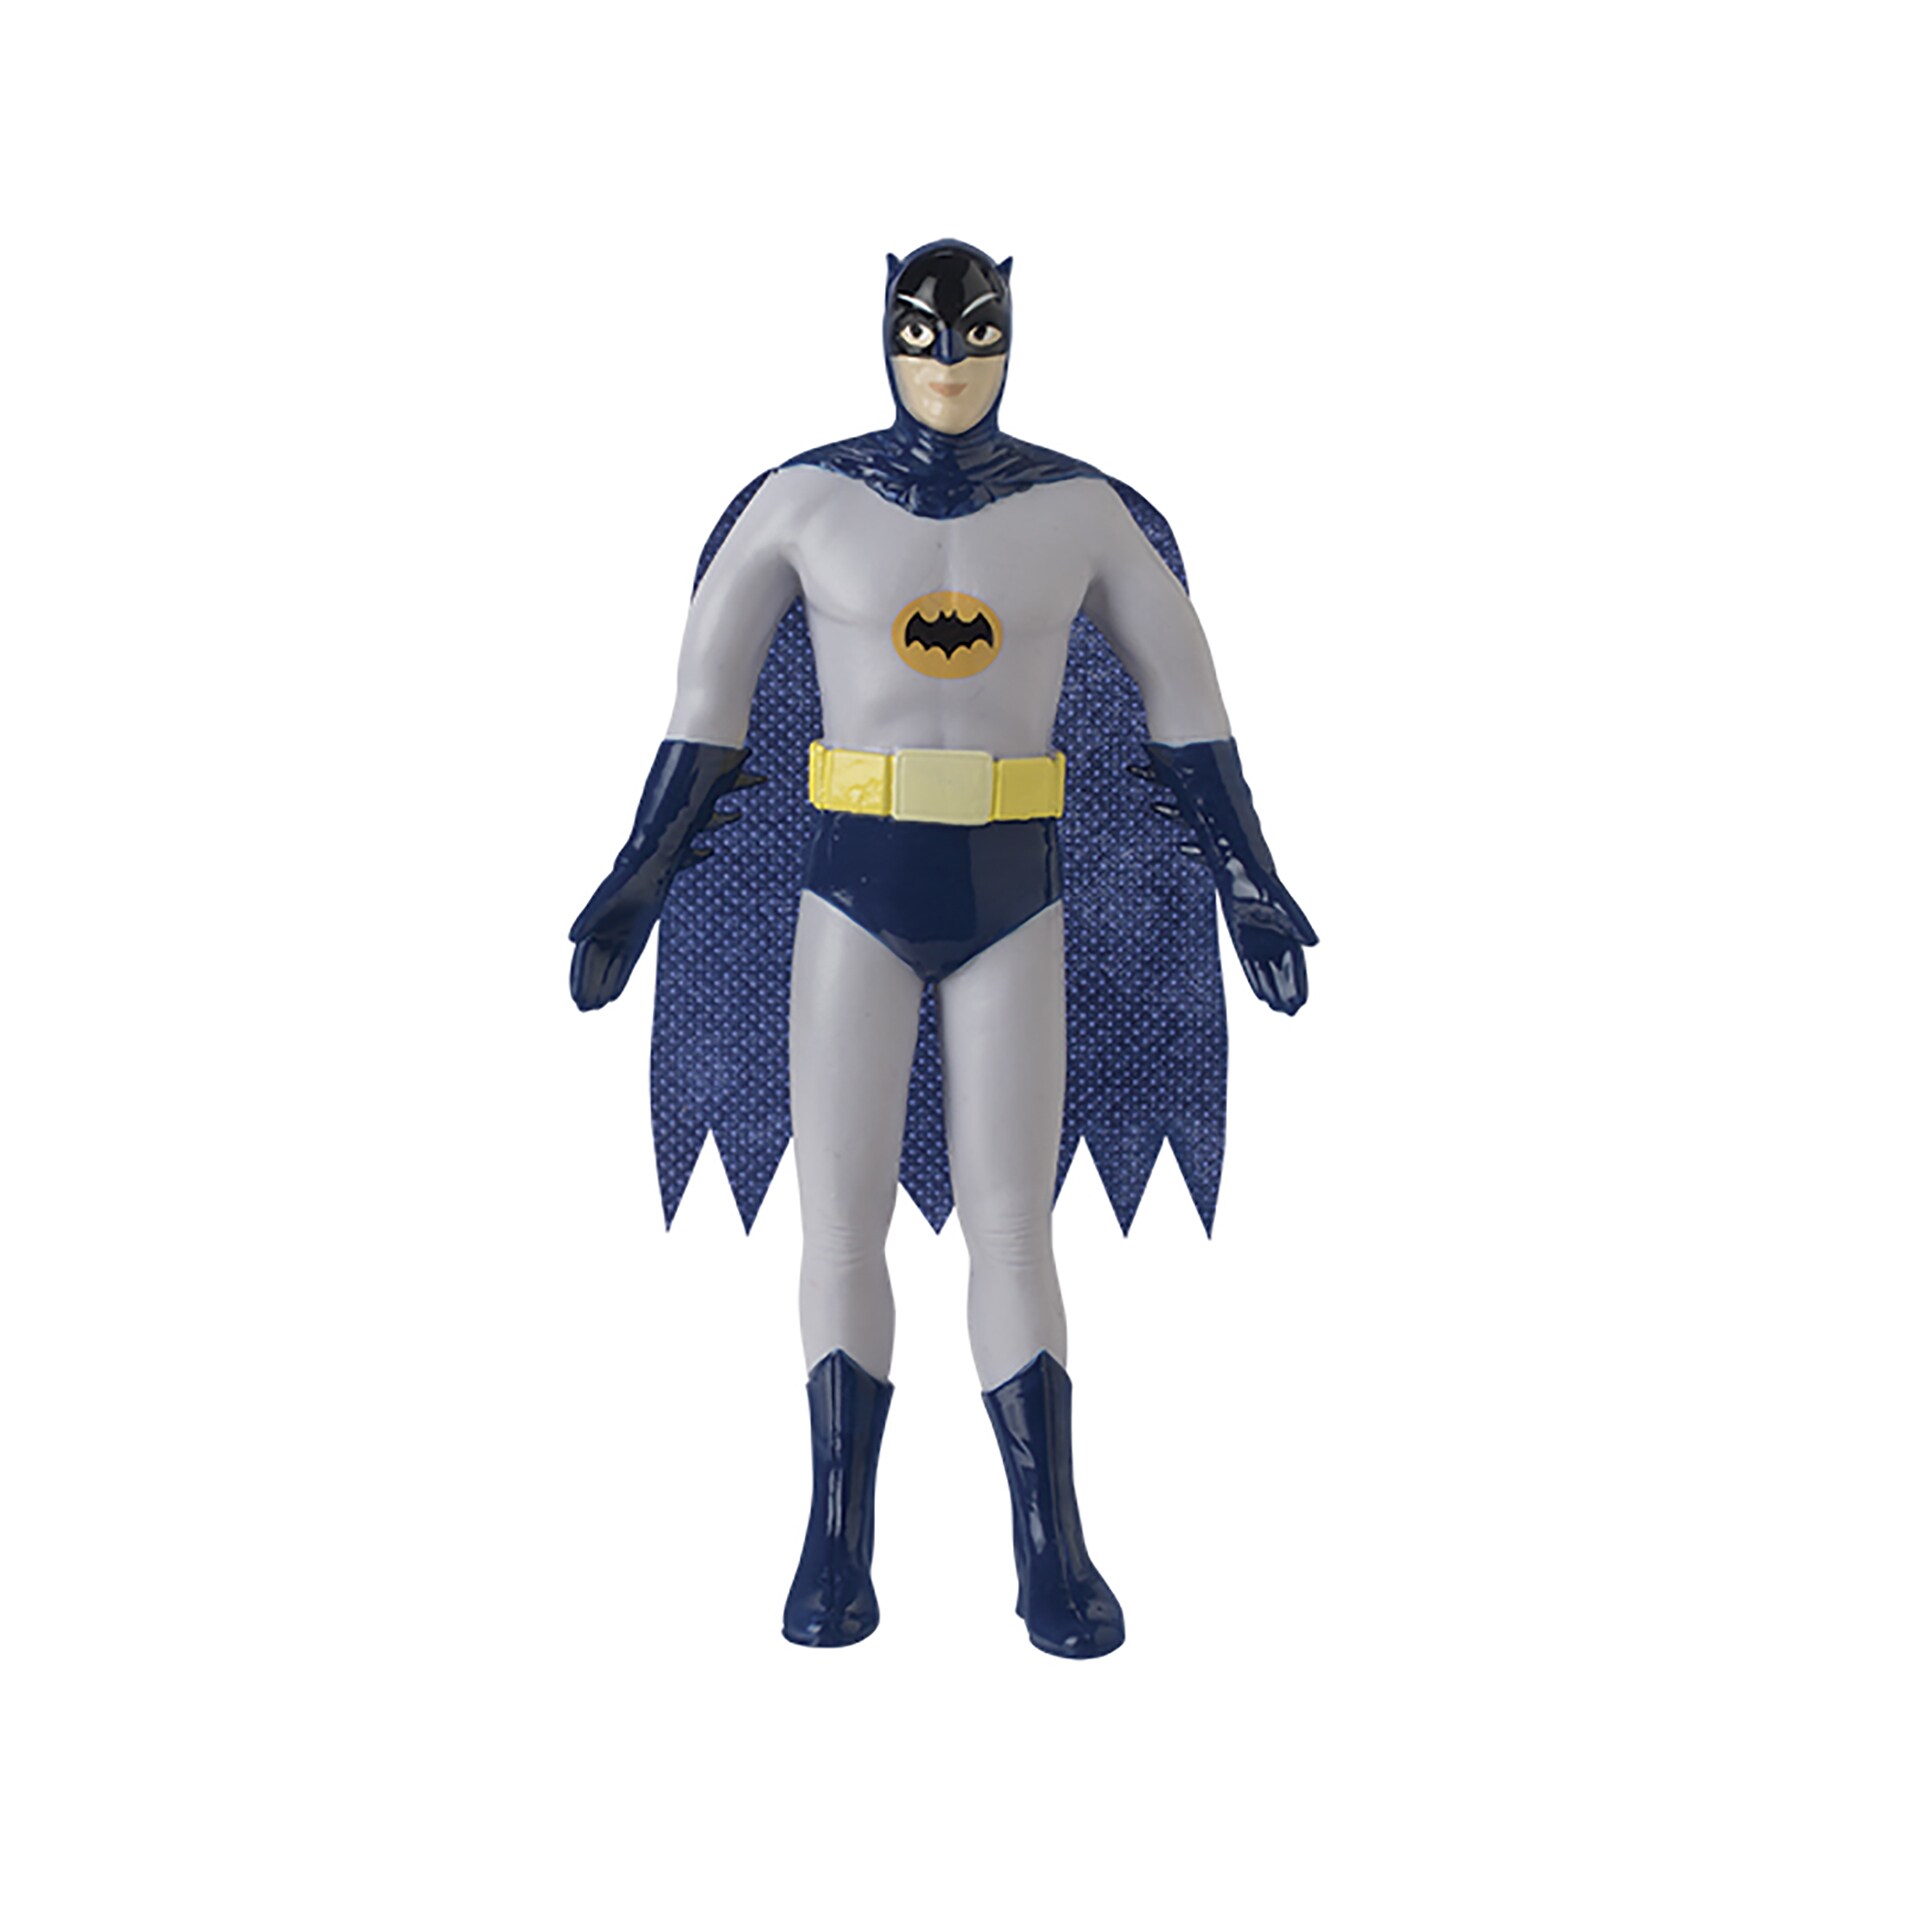 bendable poseable batman